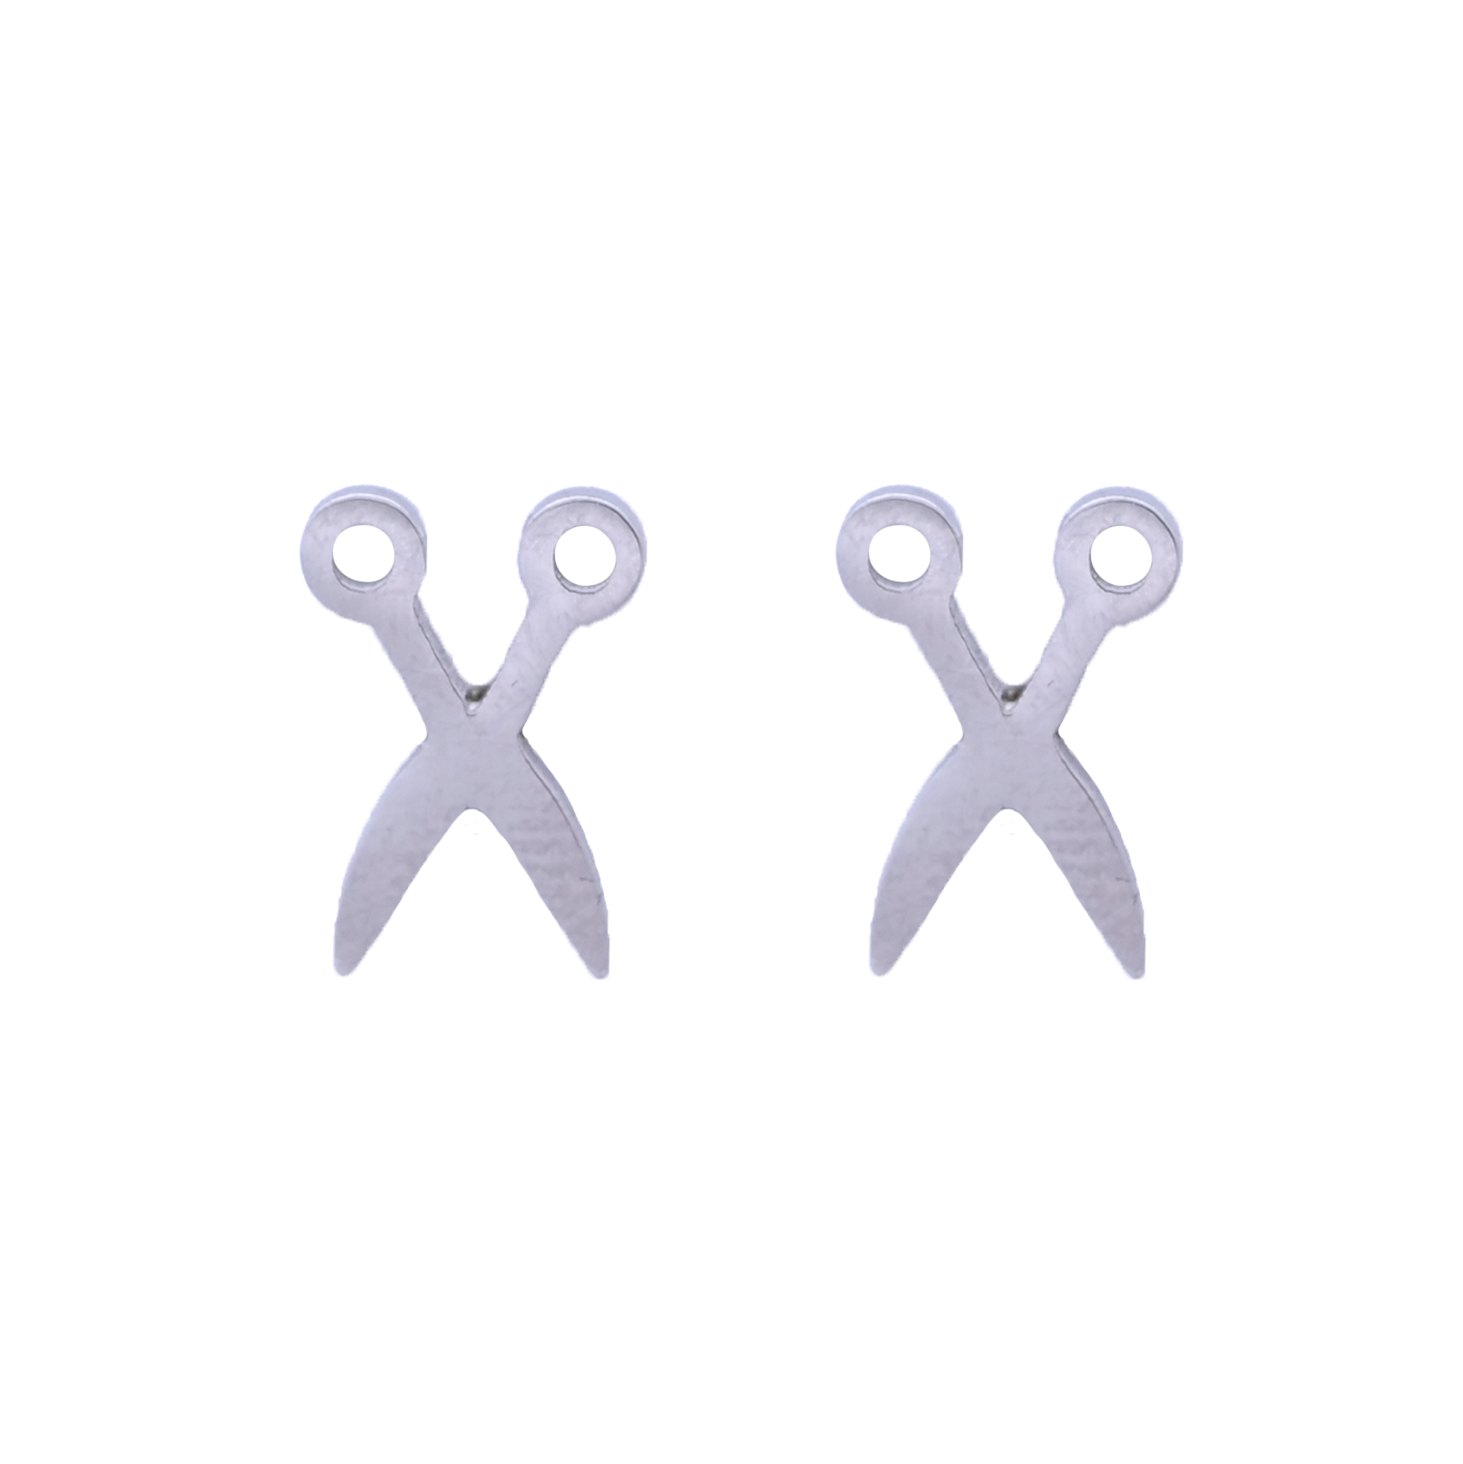 Steel Scissors